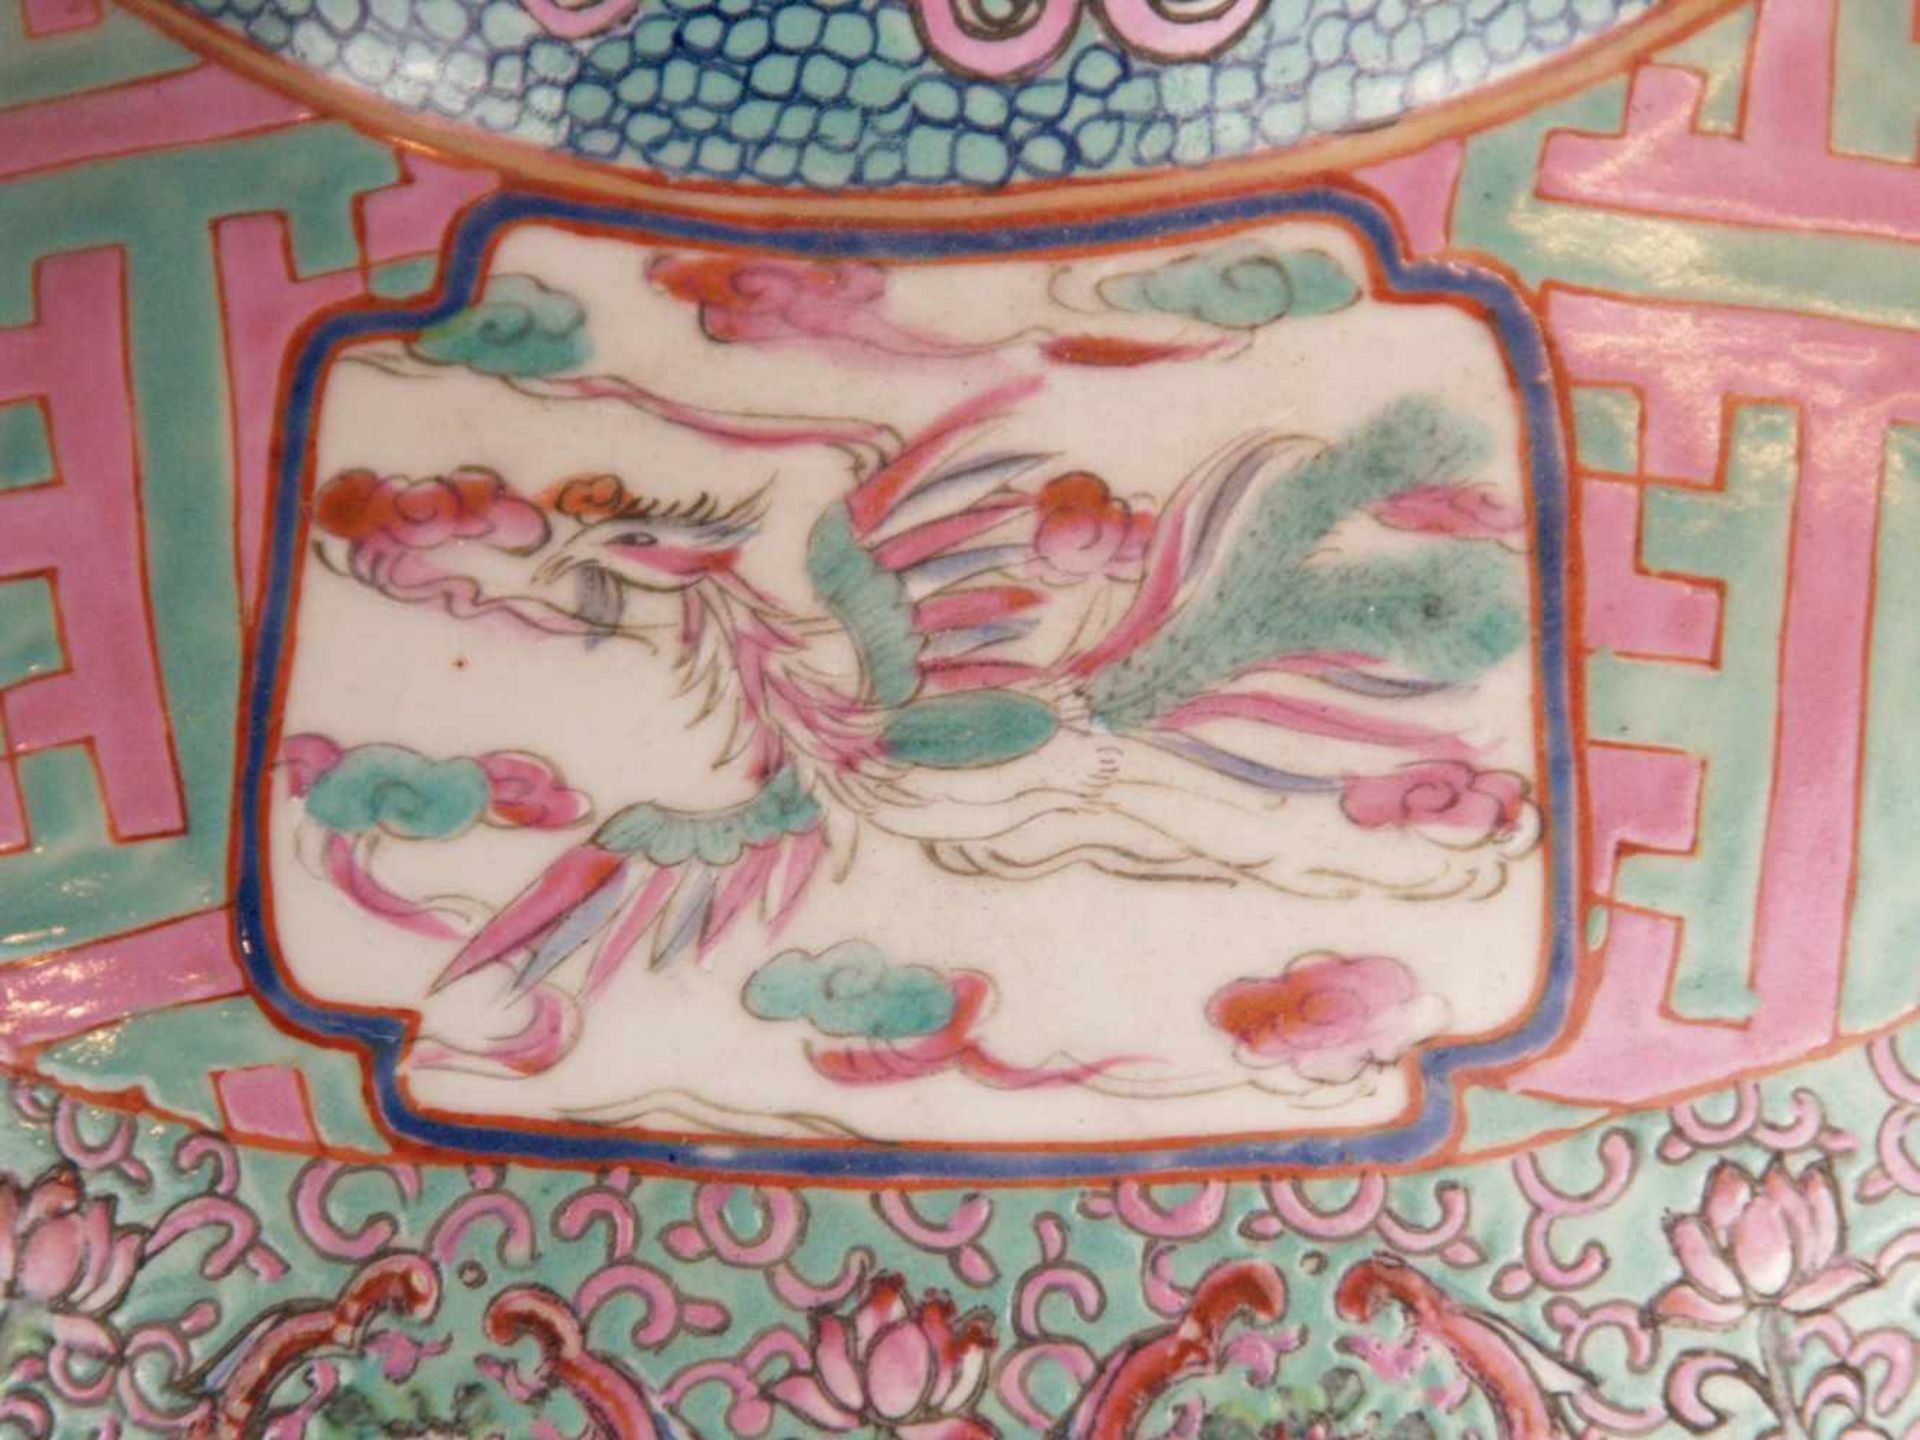 Paar Bodenvasen - China 20.Jh.,Tian qiu ping-Typus, üppiger Dekor in polychromen Emailfarben, auf - Bild 6 aus 15